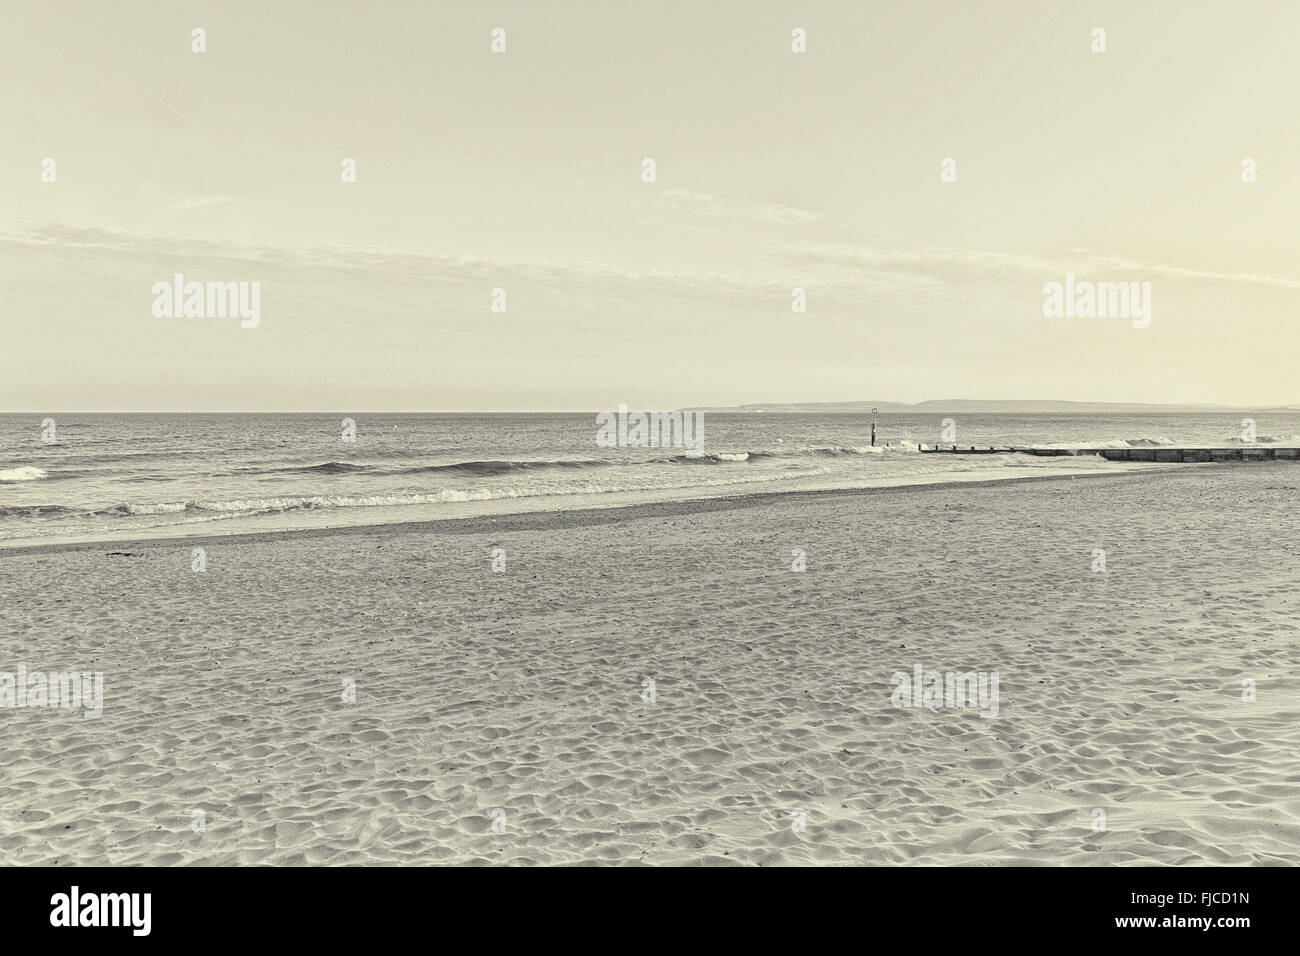 Une image en noir et blanc de lumière au coucher du soleil, d'un pilier à la direction de la mer à la plage de sable et une bande de clo spectaculaire Banque D'Images